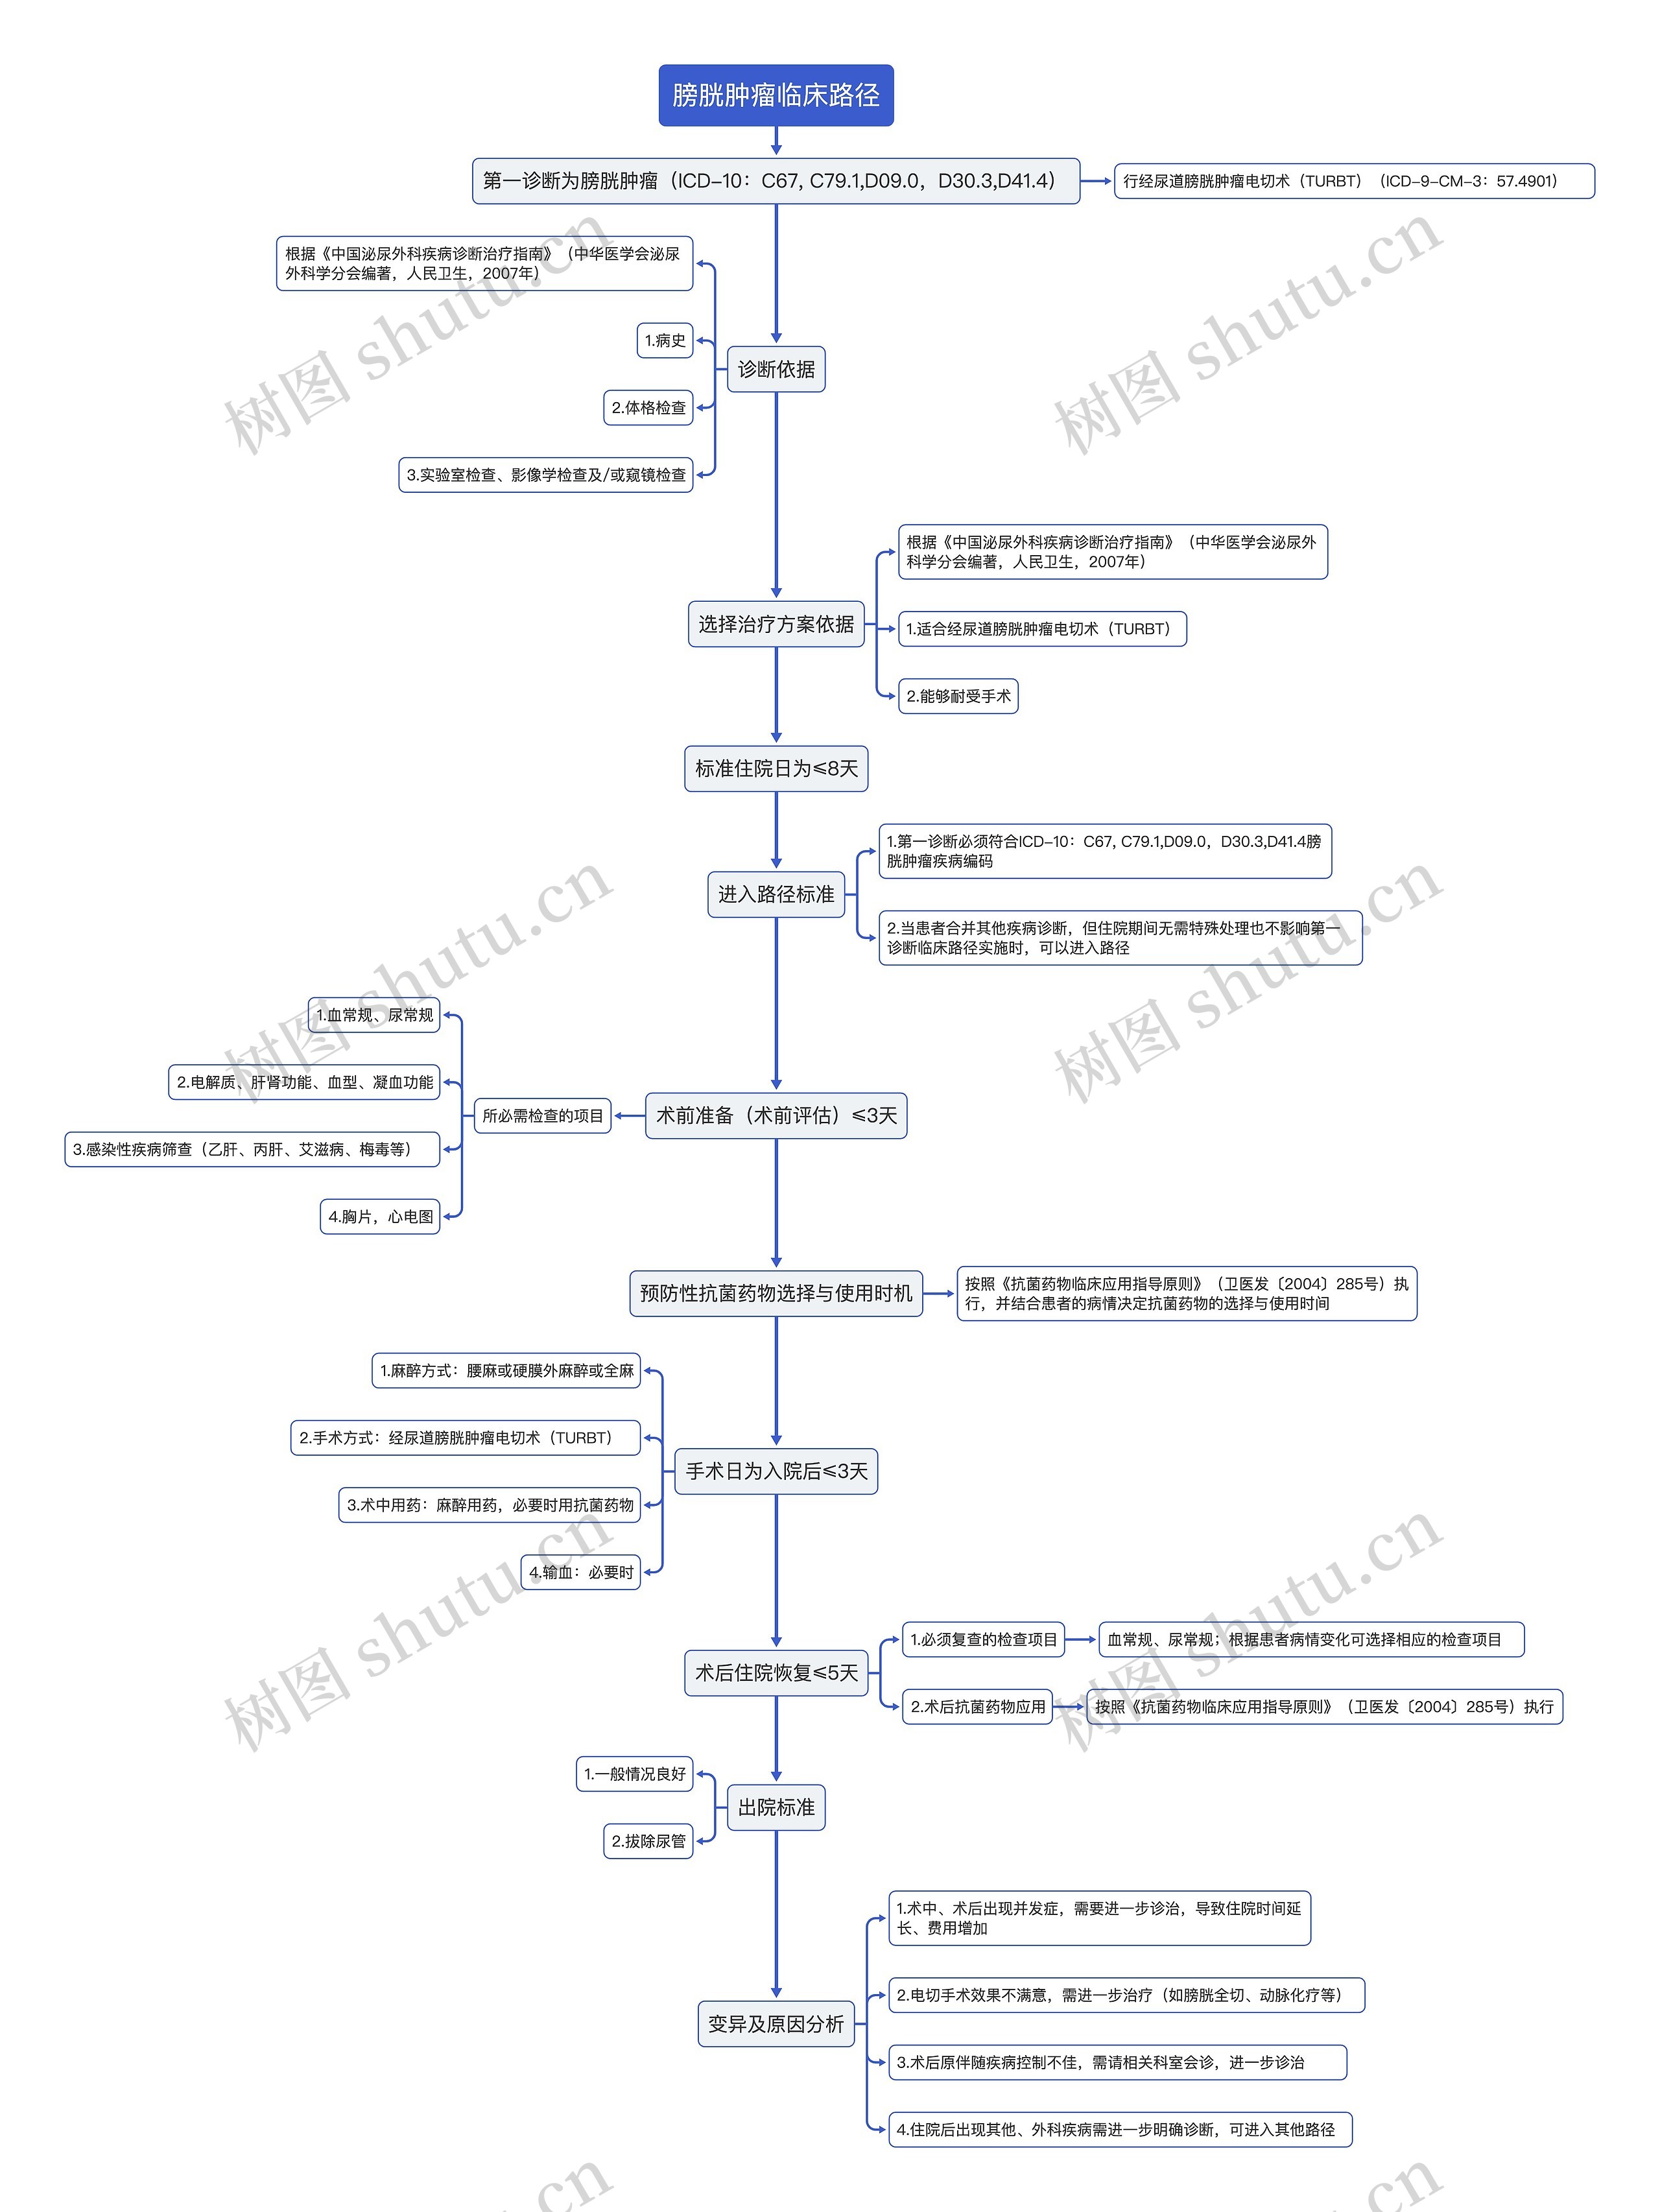 膀胱肿瘤临床路径流程图